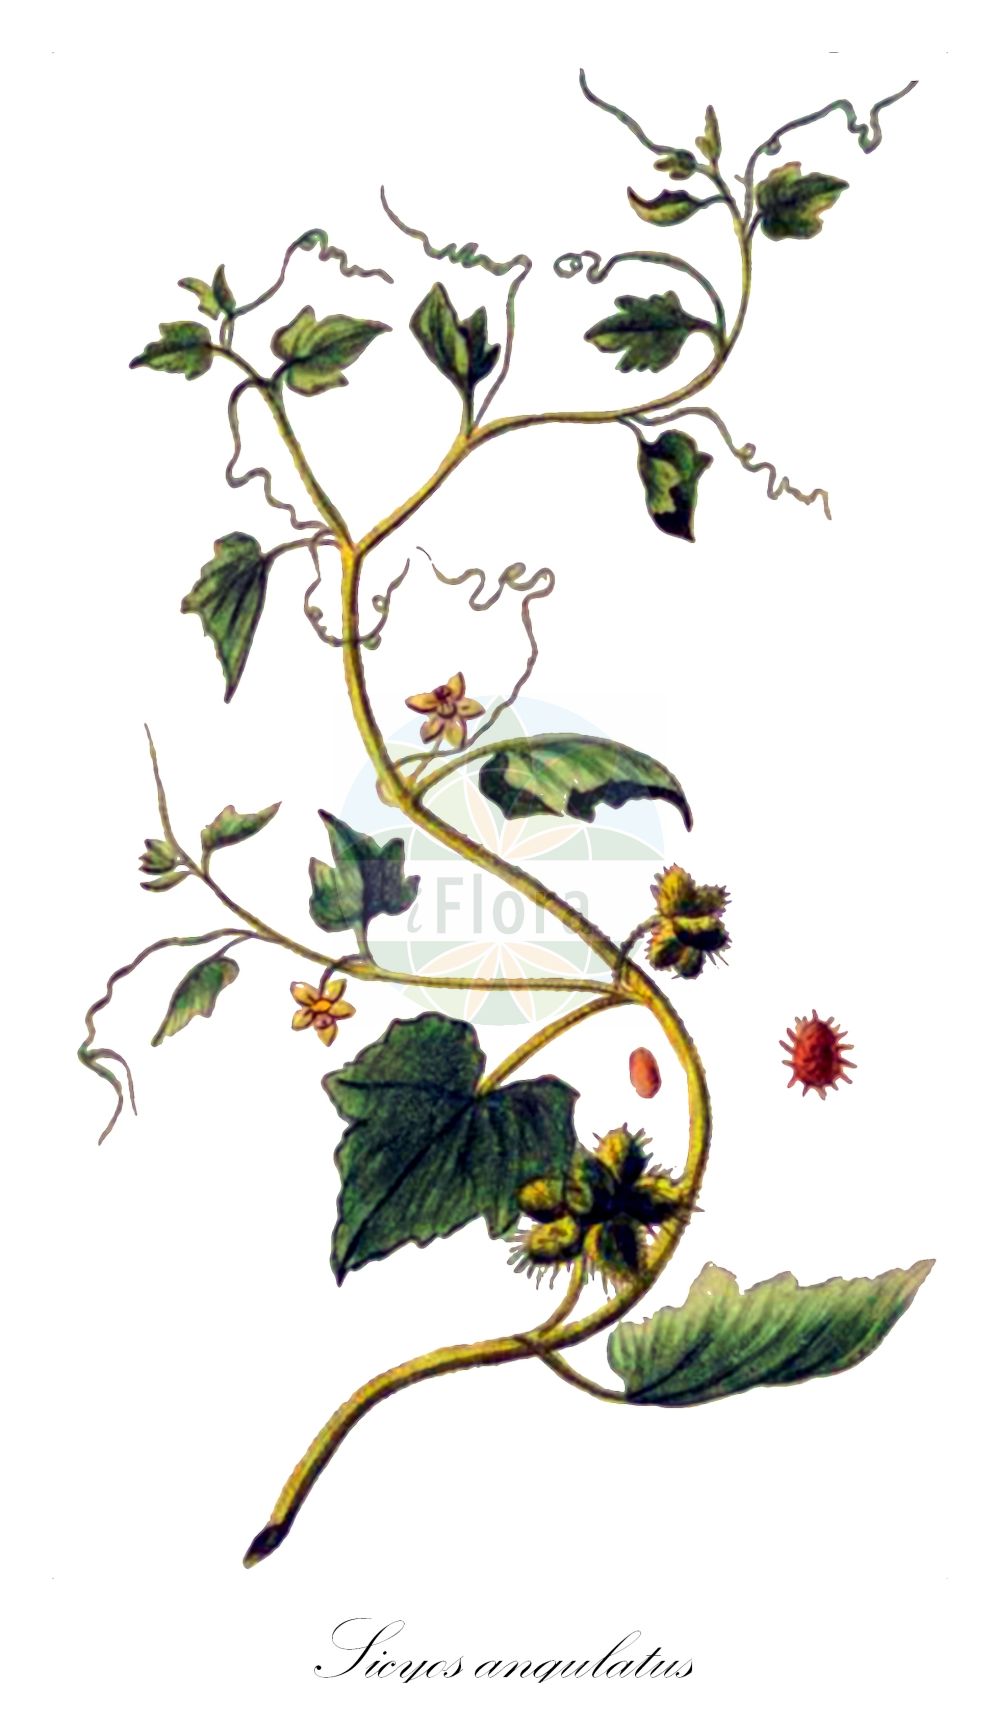 Historische Abbildung von Sicyos angulatus. Das Bild zeigt Blatt, Bluete, Frucht und Same. ---- Historical Drawing of Sicyos angulatus. The image is showing leaf, flower, fruit and seed.(Sicyos angulatus,Sicyos angulatus,Sicyos,Cucurbitaceae,Kürbisgewächse,Cucurbit family,Blatt,Bluete,Frucht,Same,leaf,flower,fruit,seed,Bonelli (1771-1793))